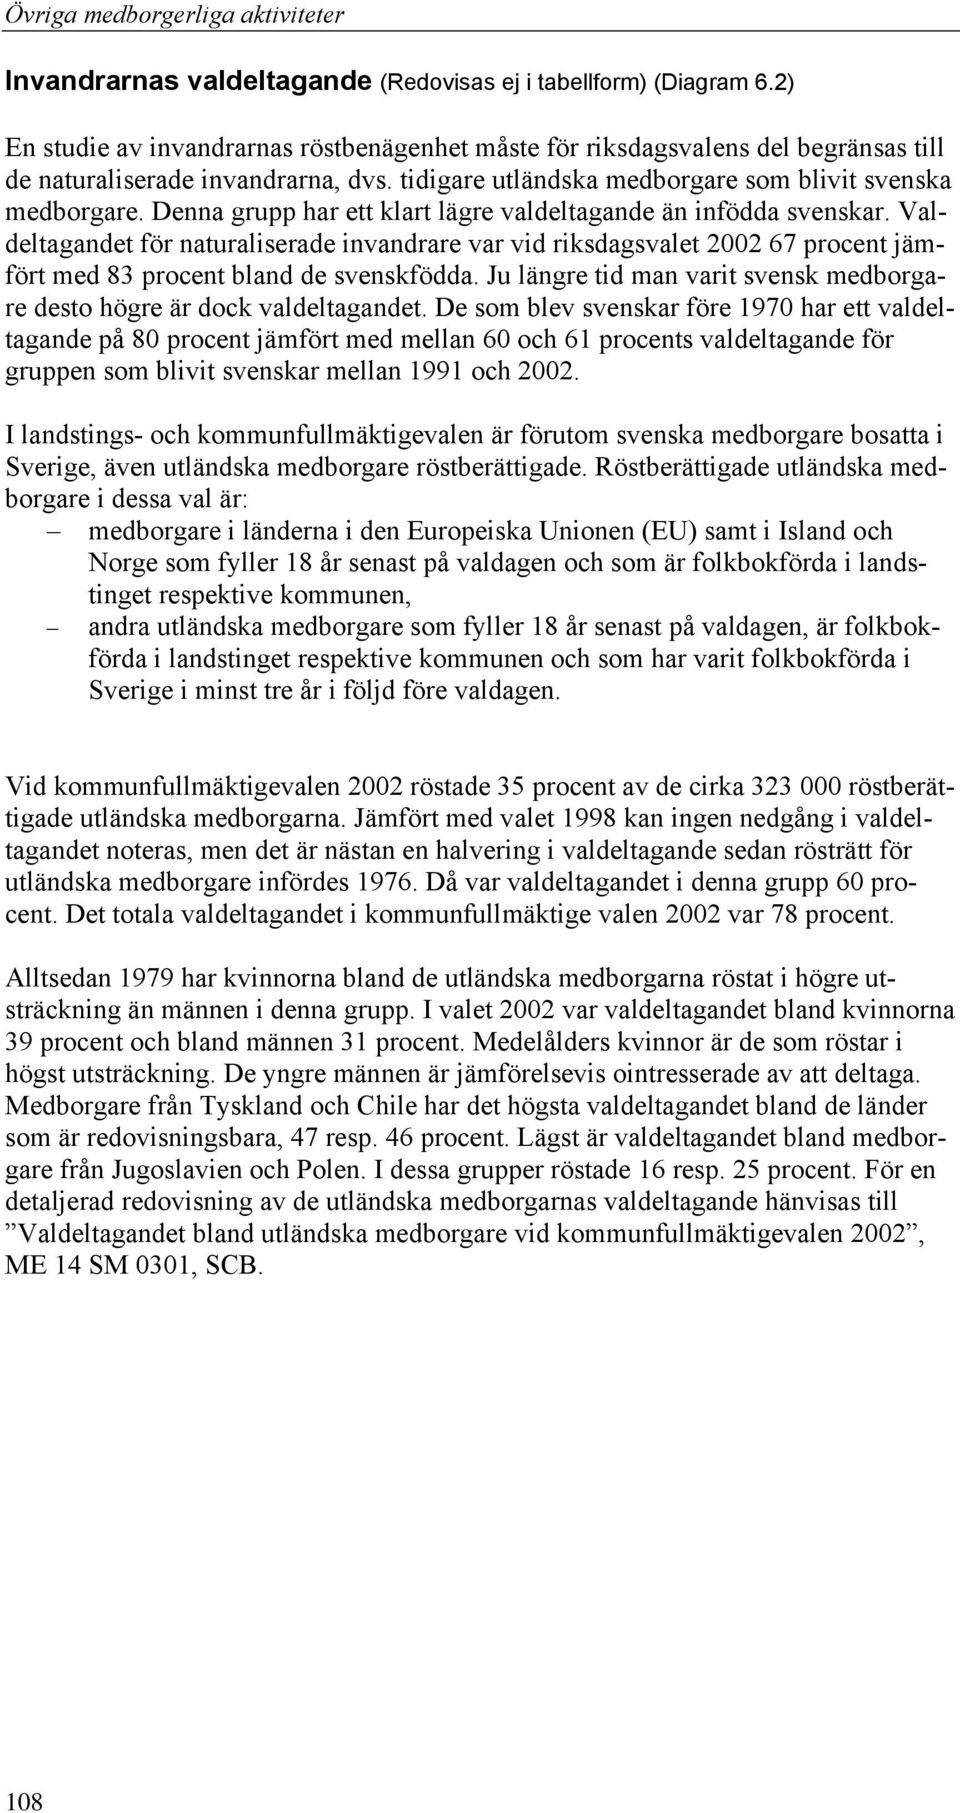 Valdeltagandet för naturaliserade invandrare var vid riksdagsvalet 2002 67 procent jämfört med 83 procent bland de svenskfödda.